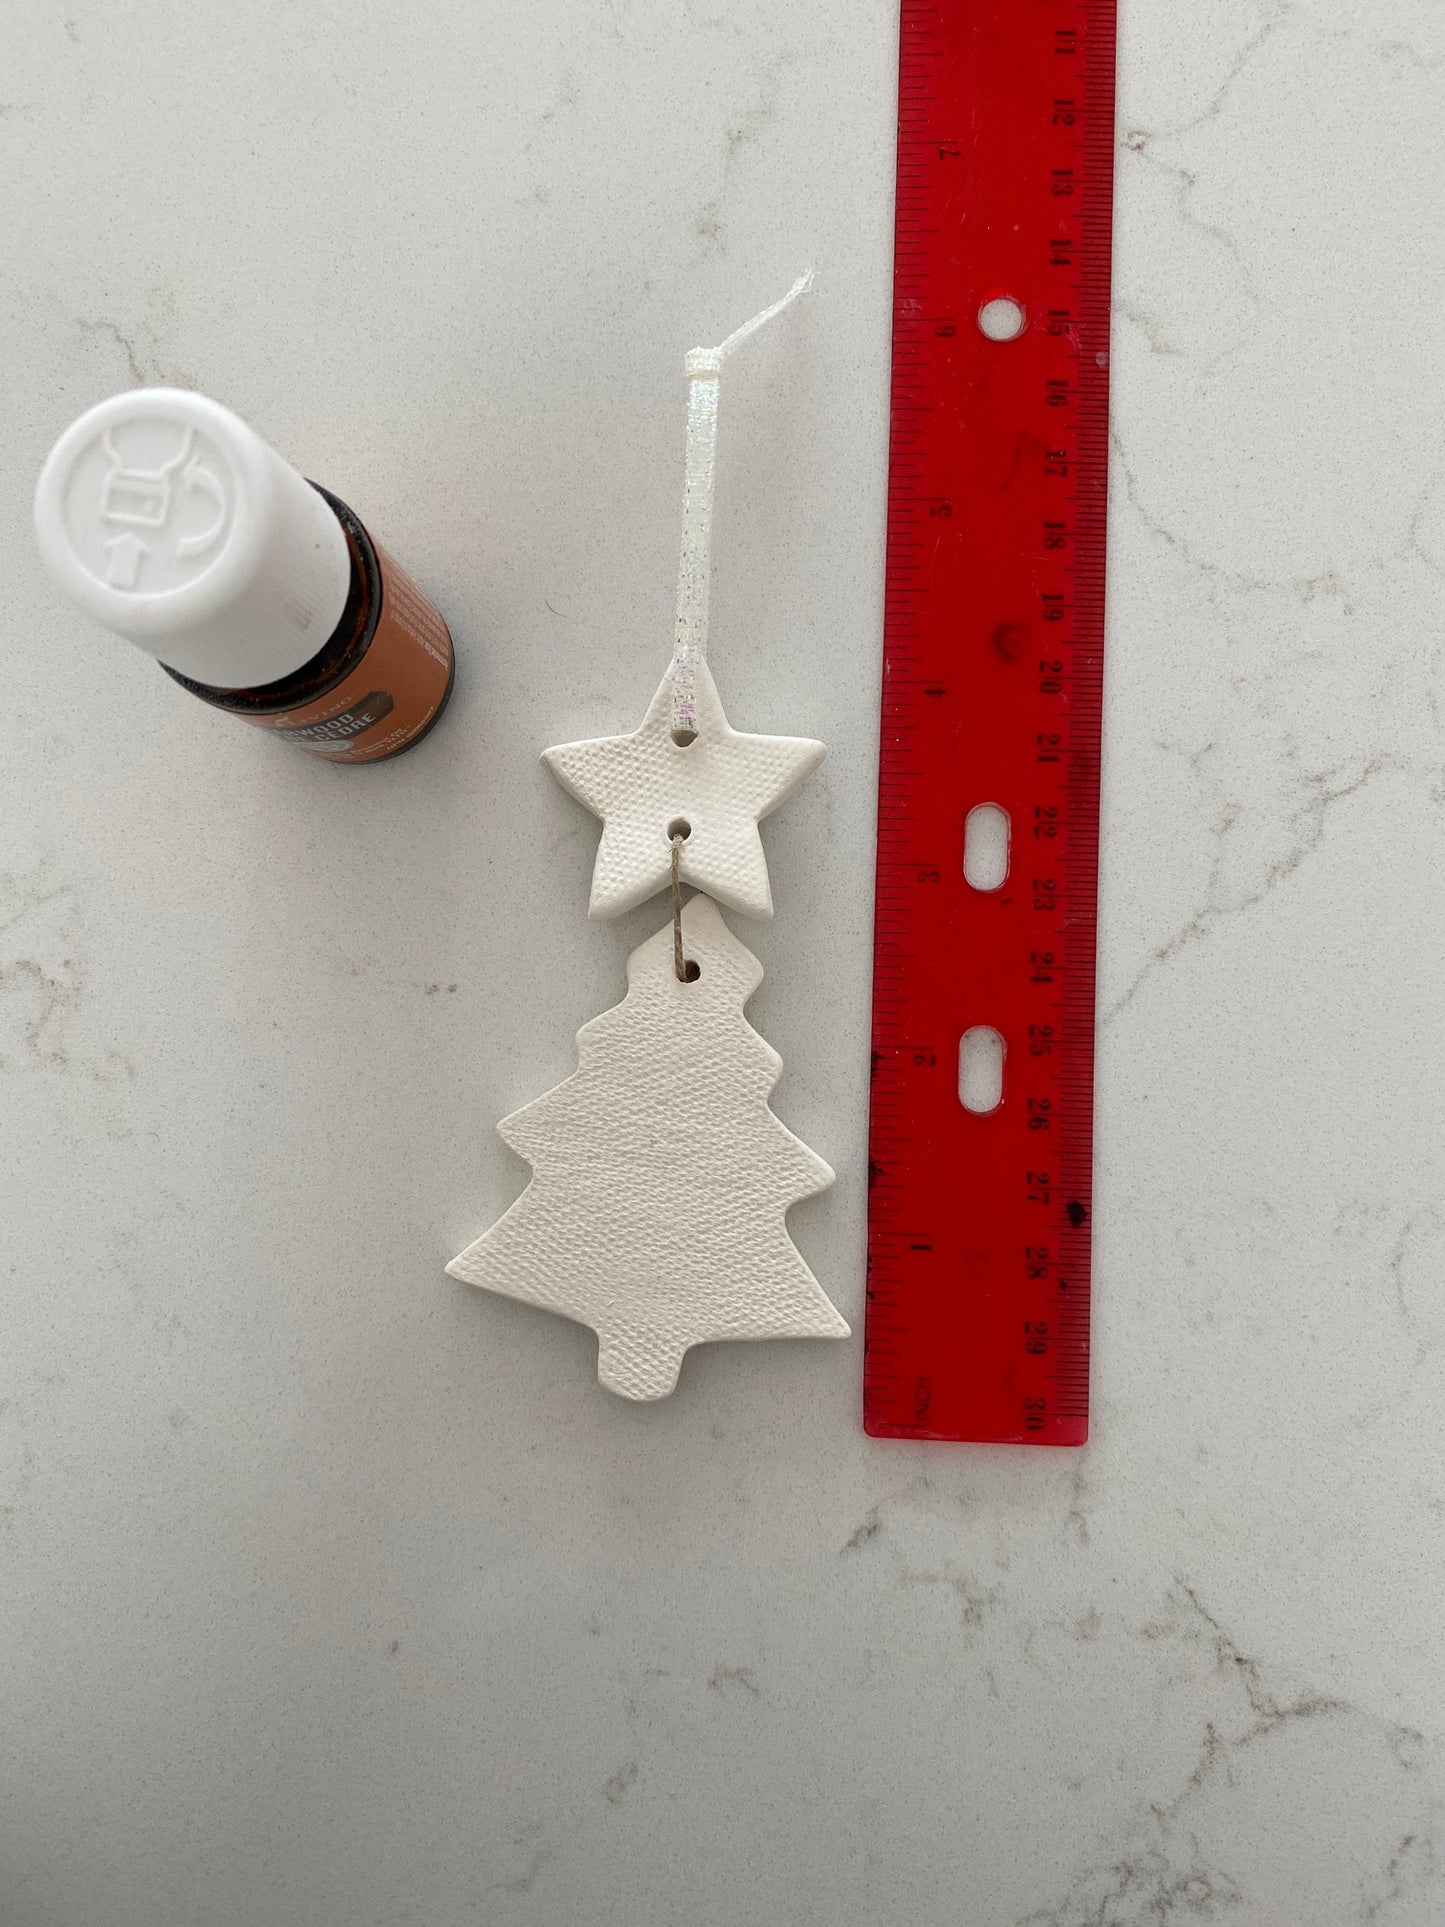 Pepo Ceramics Christmas Tree Ornament - essential oil clay diffuser